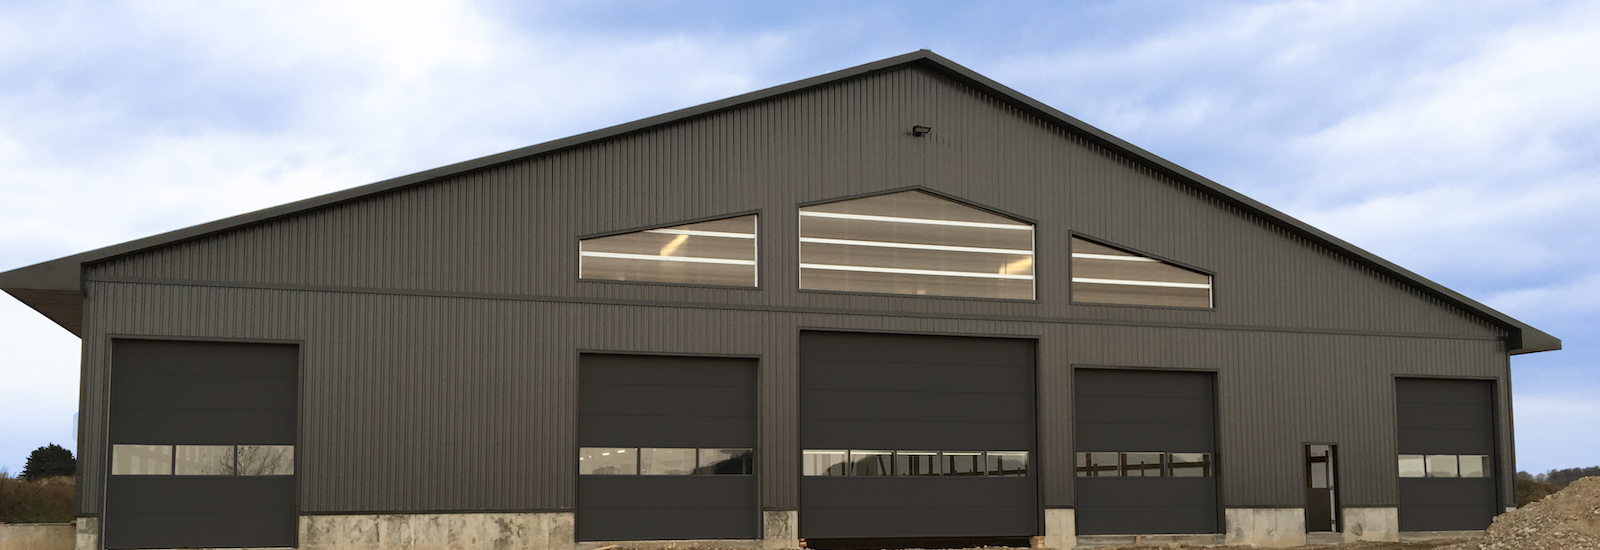 industrial garage doors company